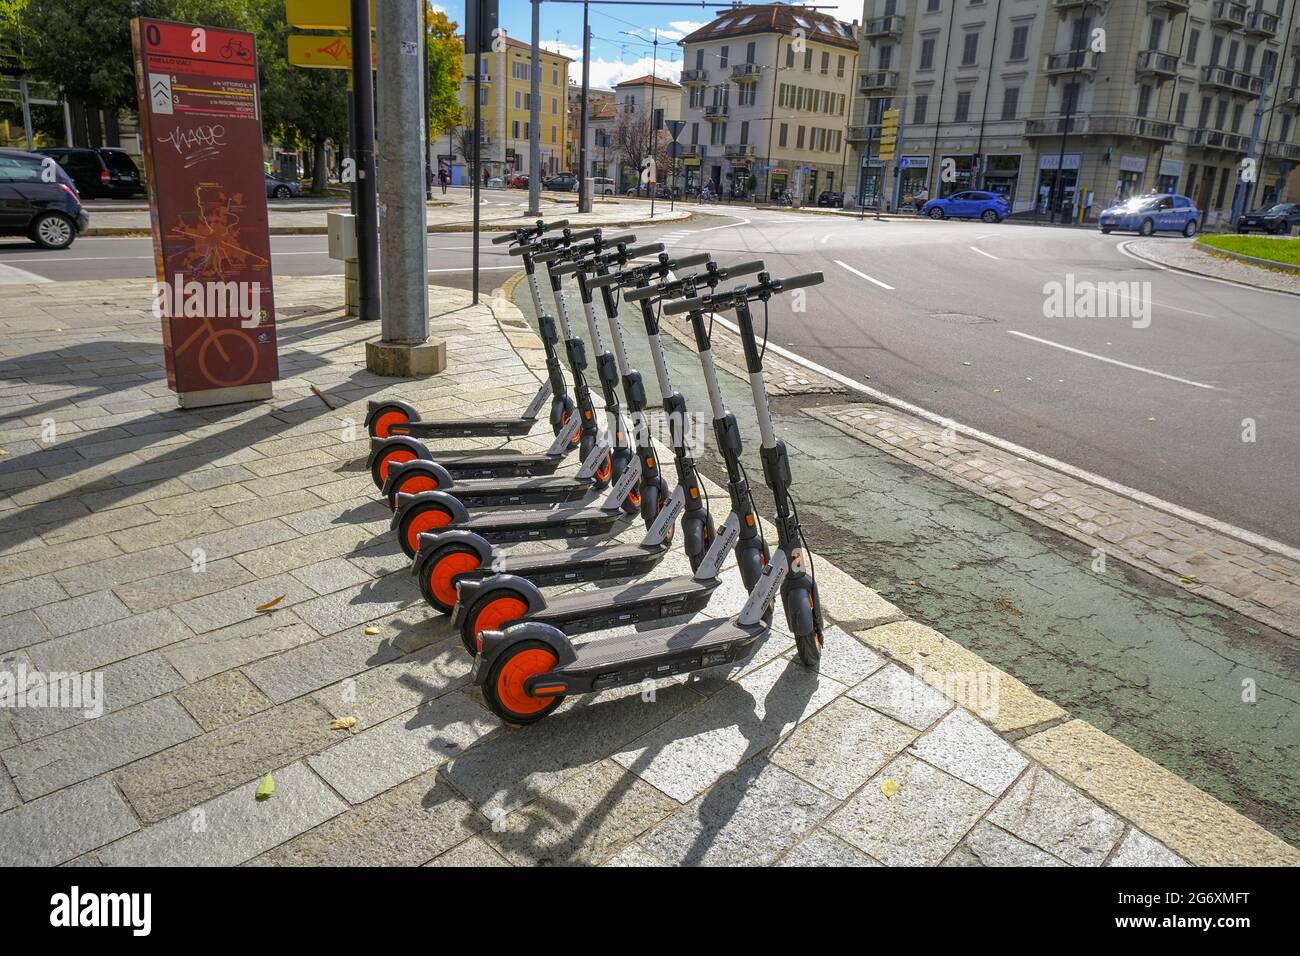 Octubre 2020 Parma, Italia: Motos eléctricas en la calle de la ciudad listo para alquilar utilizando la aplicación móvil. Foto de stock